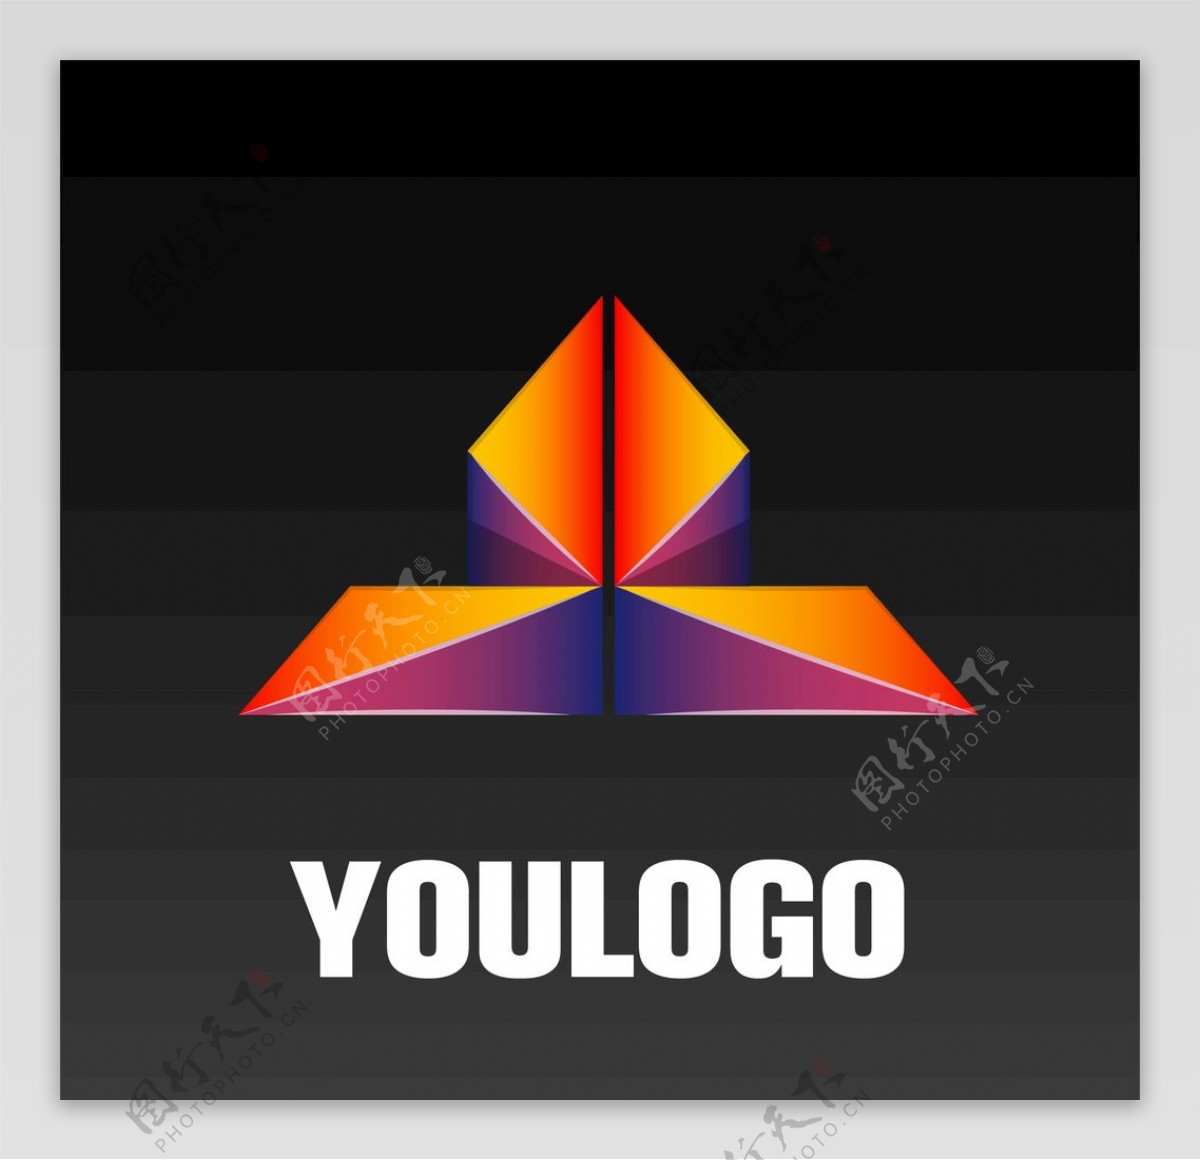 折纸logo图片